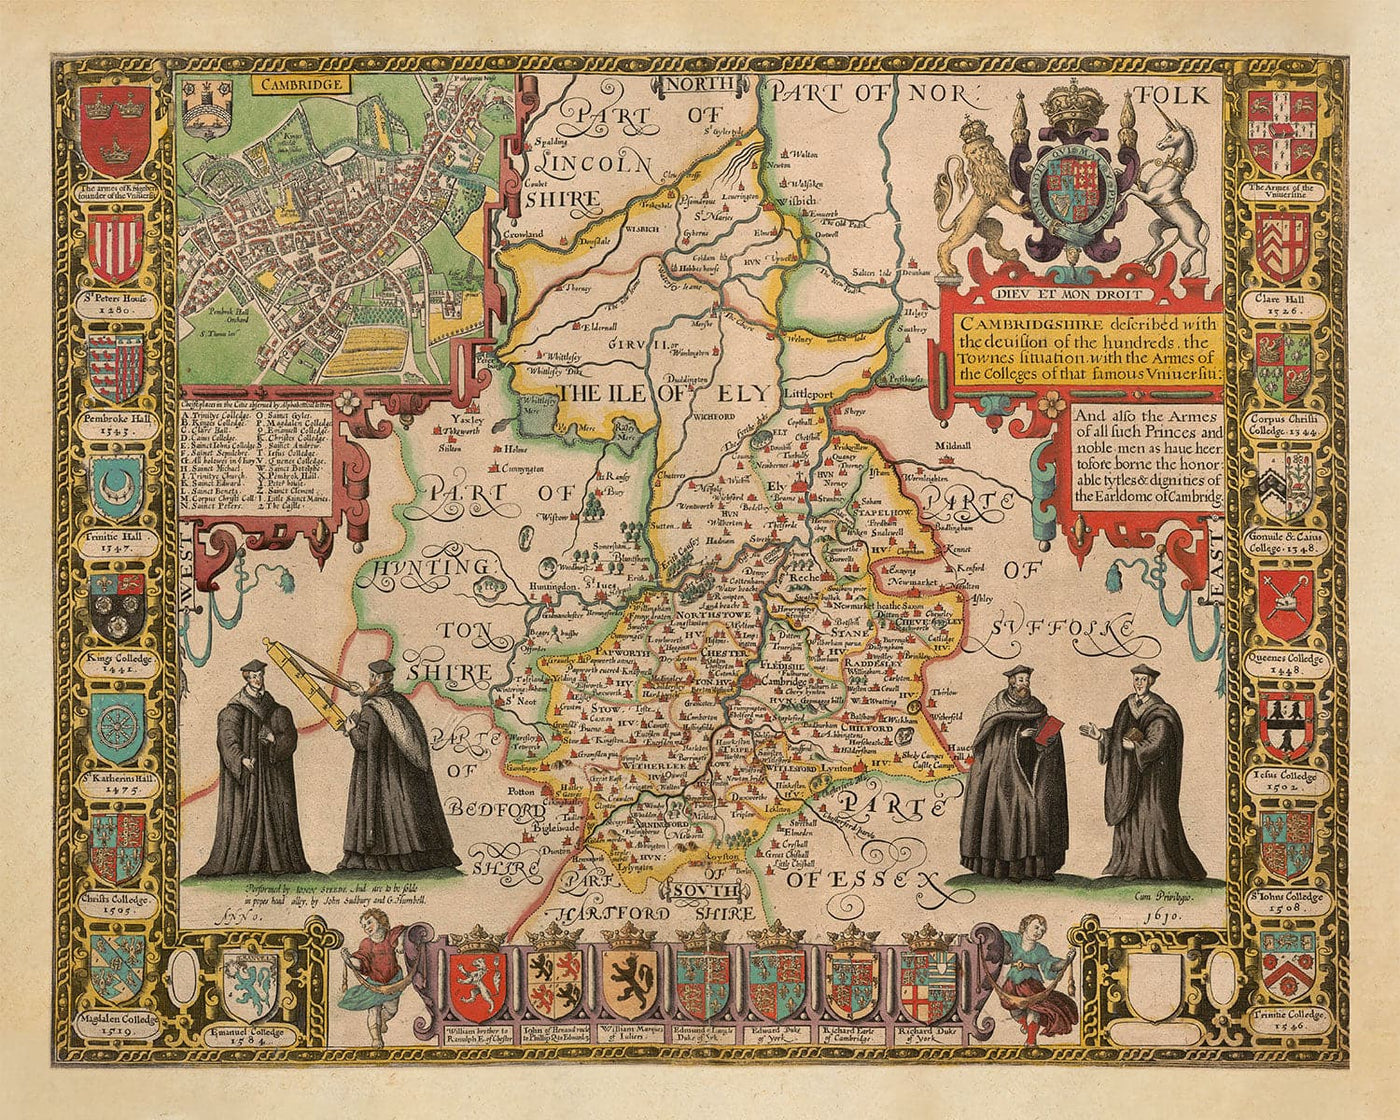 Alte Karte von Cambridgeshire, 1611 von John Speed ​​- Cambridge, Peterborough, Wisbech, St. Neans